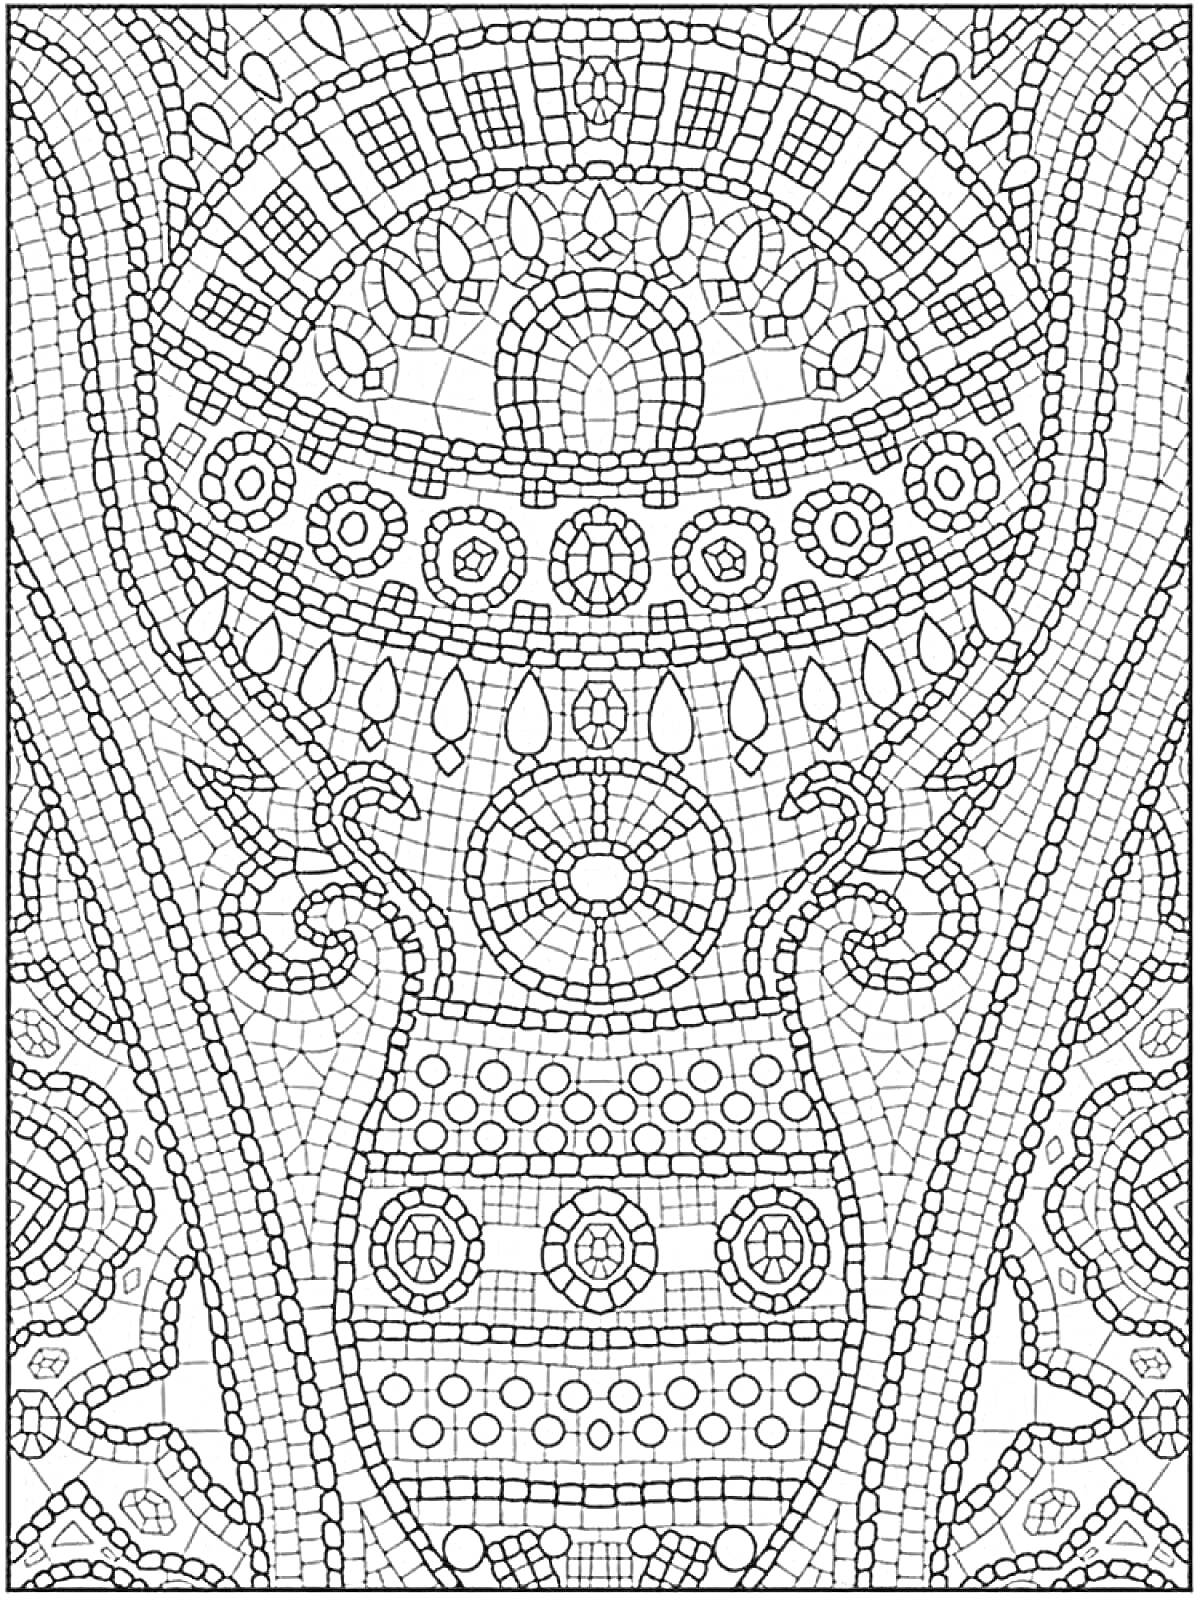 Раскраска Мозаика с разнообразными геометрическими узорами, включая полукруги, окружности, дуги и квадратные элементы